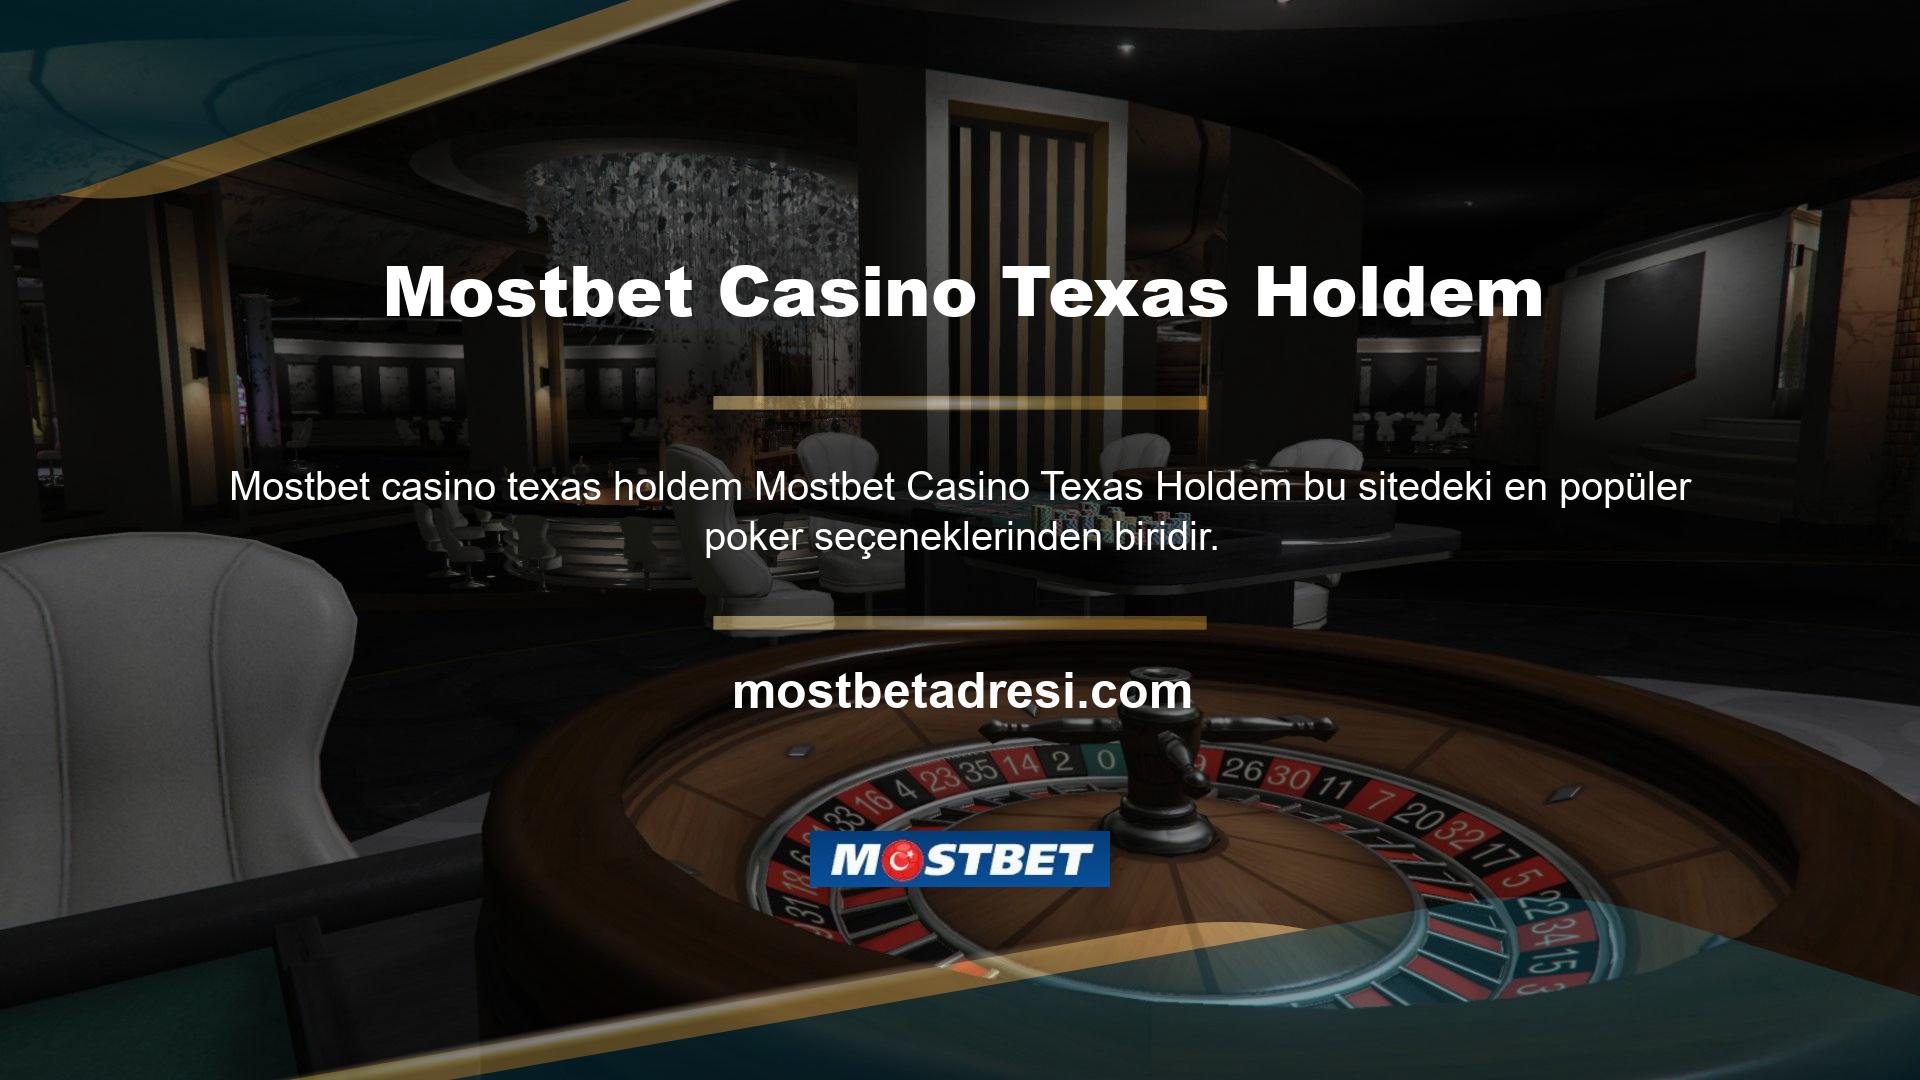 Poker oyununun başka bir versiyonuna dönüştürülen Texas Hold'em casino formatı, en iyi kazanma şansını sunuyor